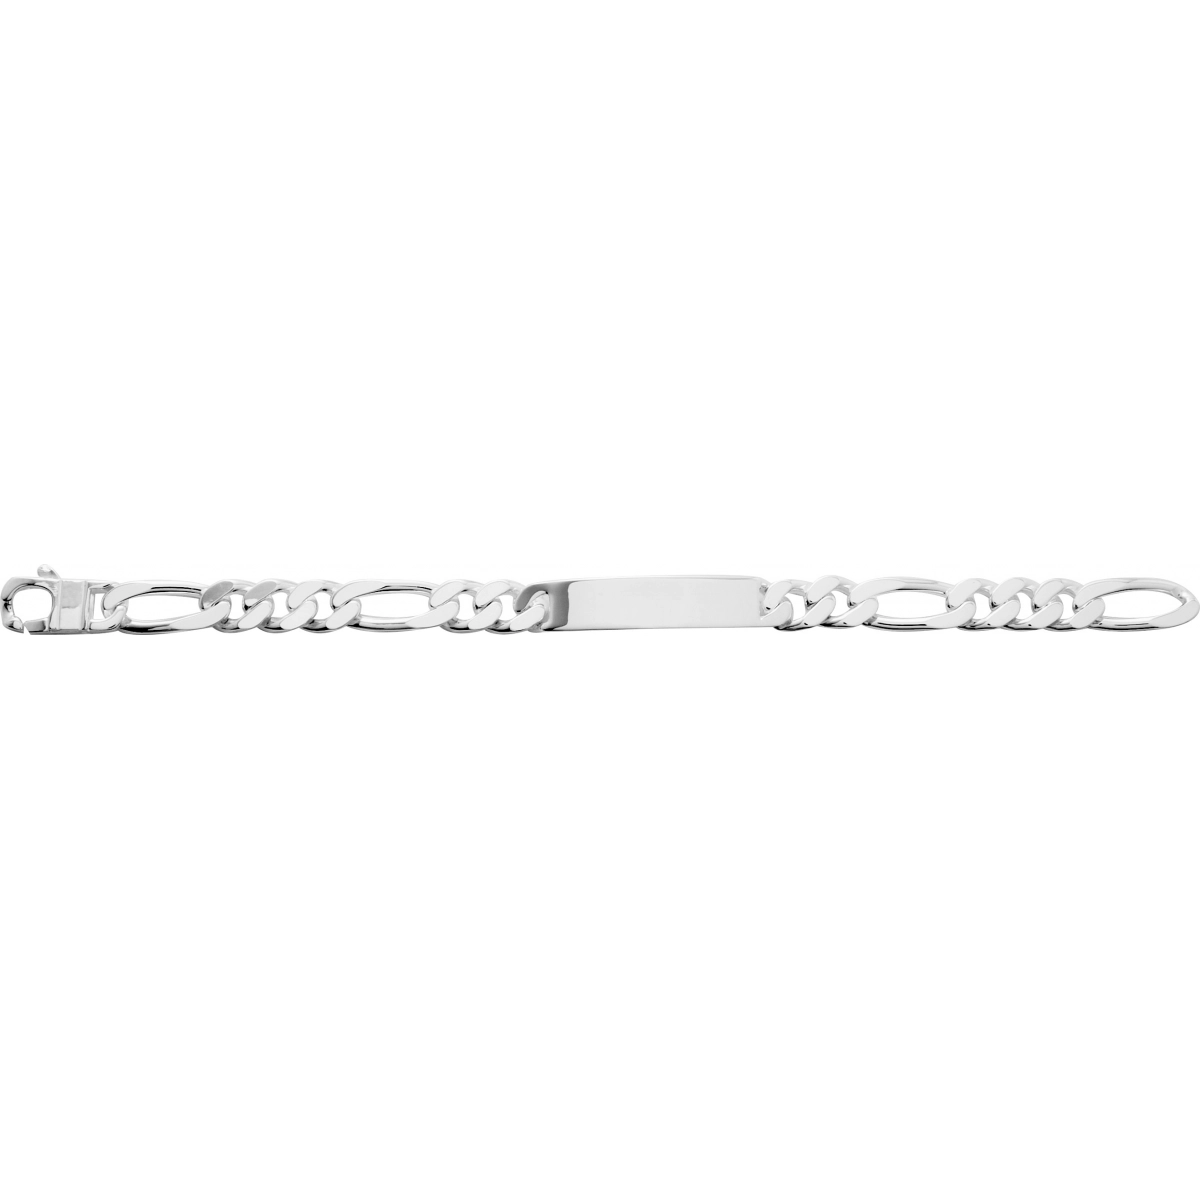 ID bracelet rh925 silver - Size: 22  Lua Blanca  304036.00.22